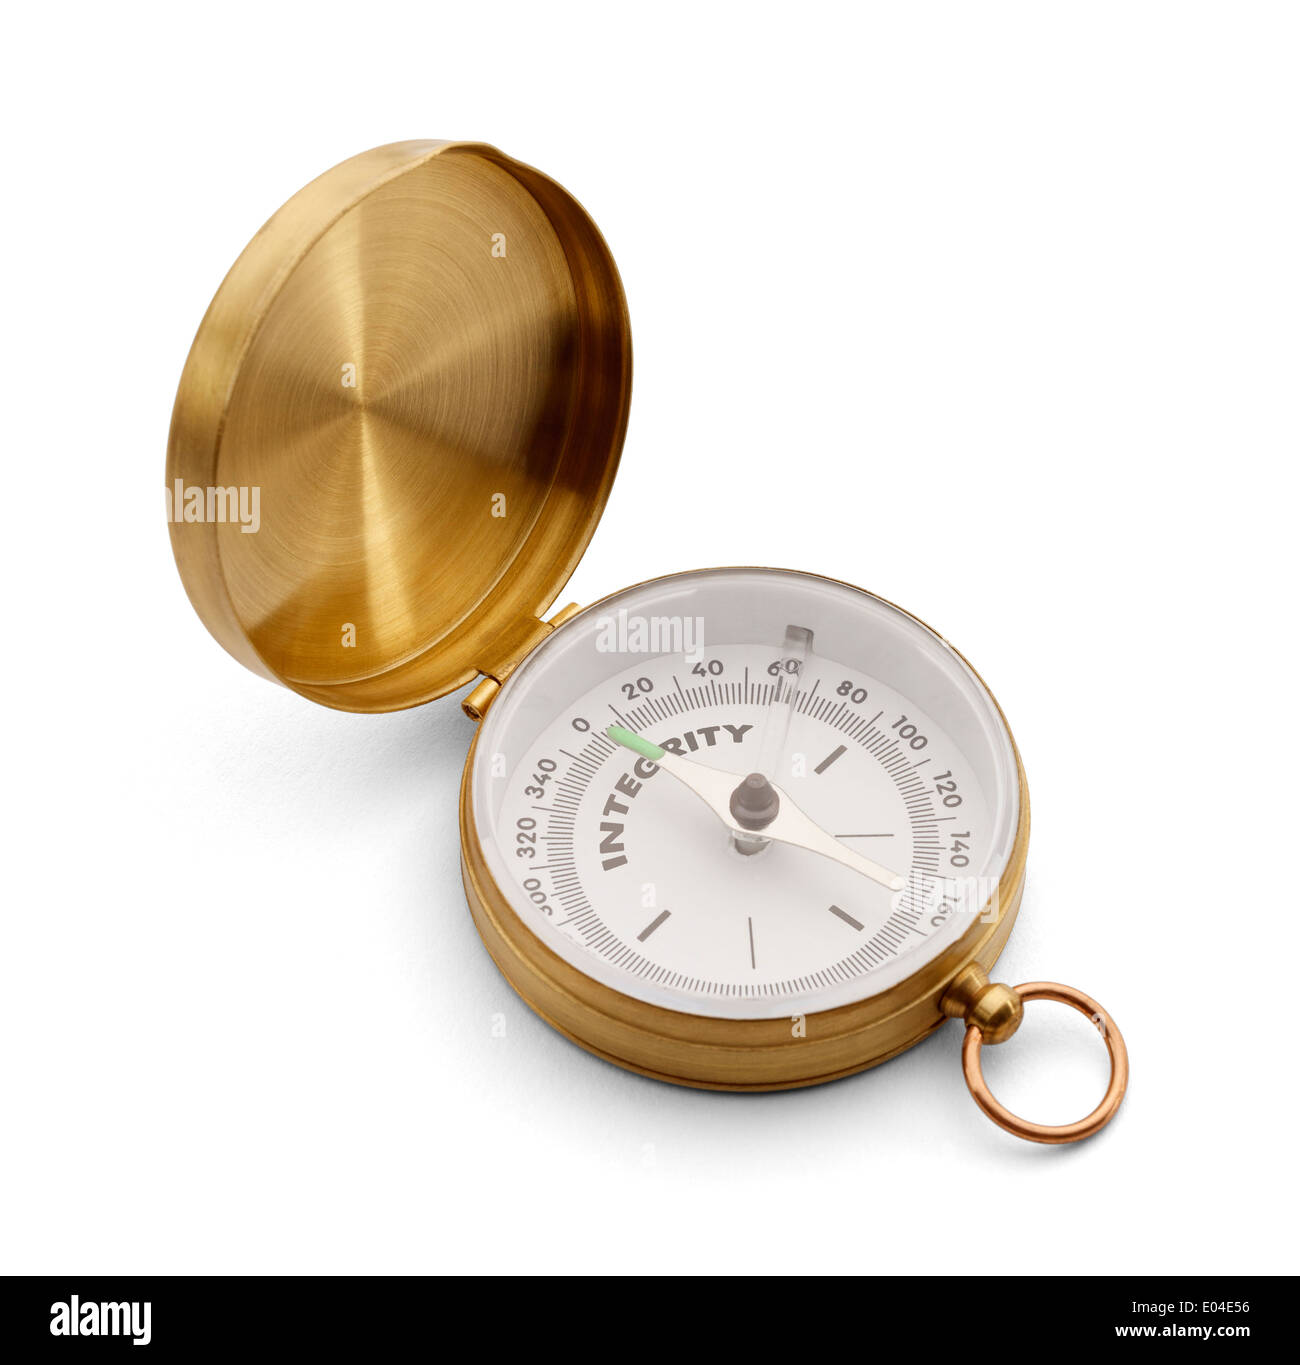 Messing-Kompass mit Flip-Top, die das Wort Integrität gedruckt drauf hat. Isolated on White Background. Stockfoto